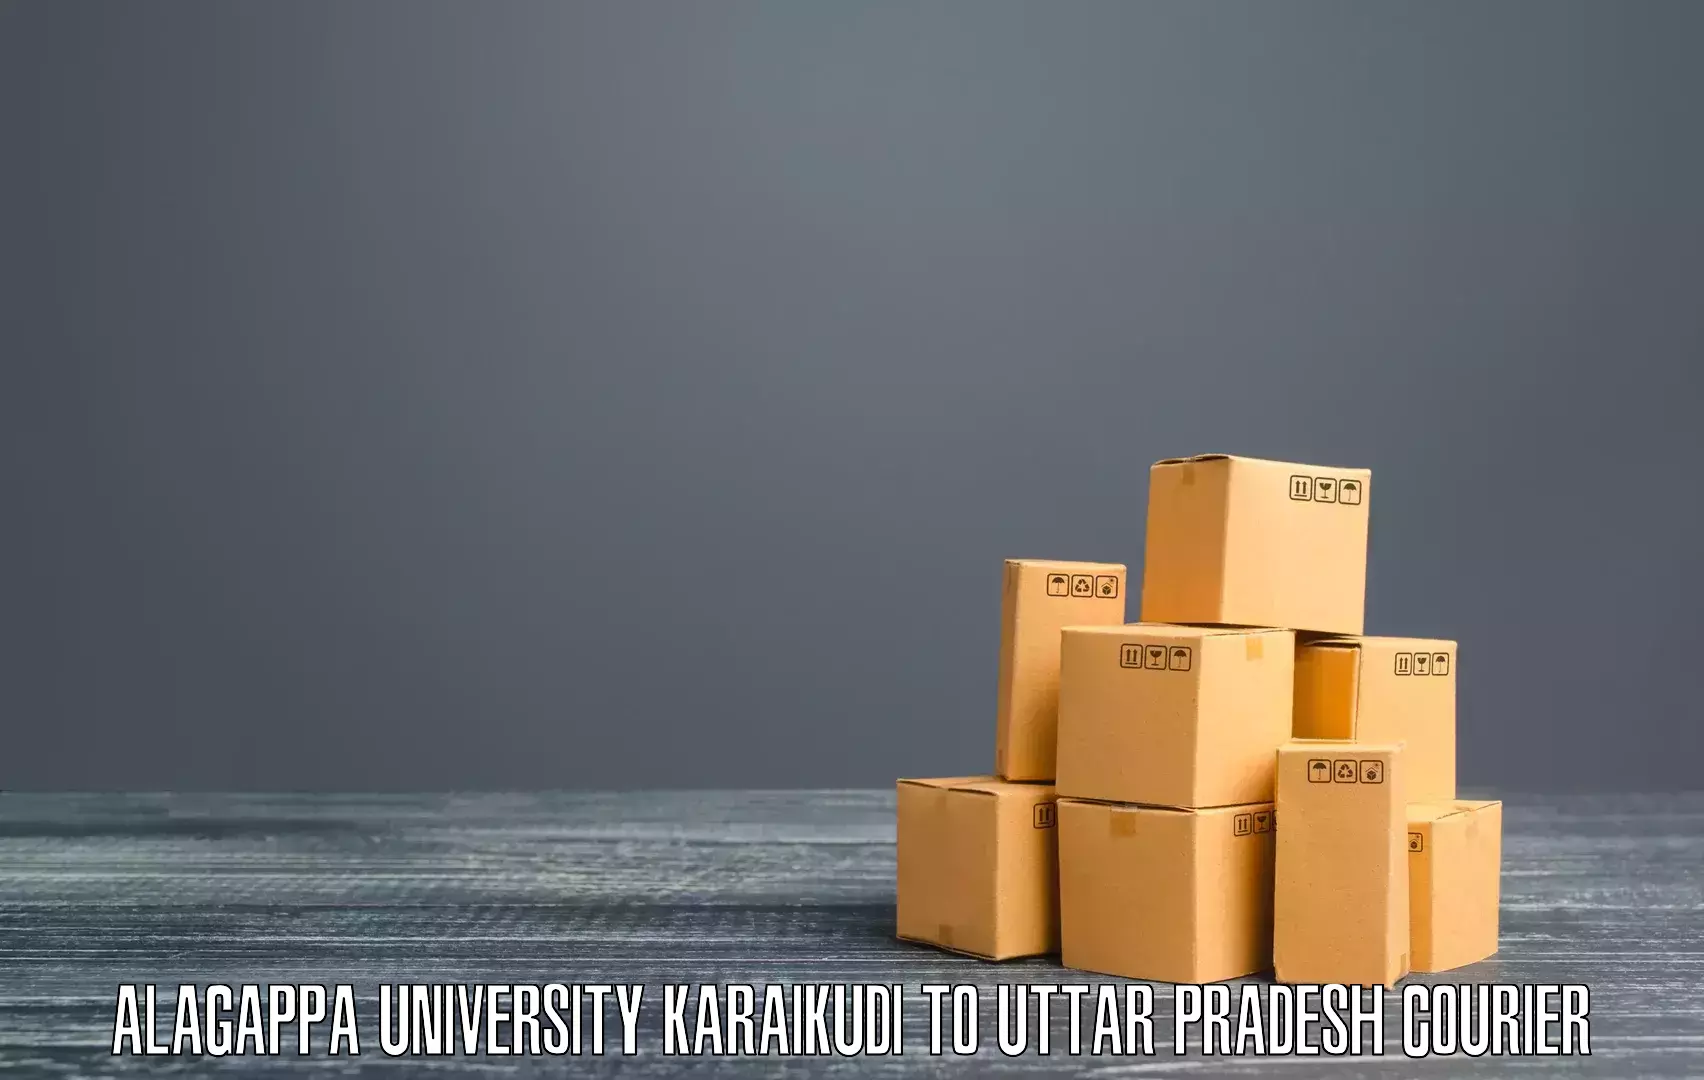 Urban courier service Alagappa University Karaikudi to Vrindavan